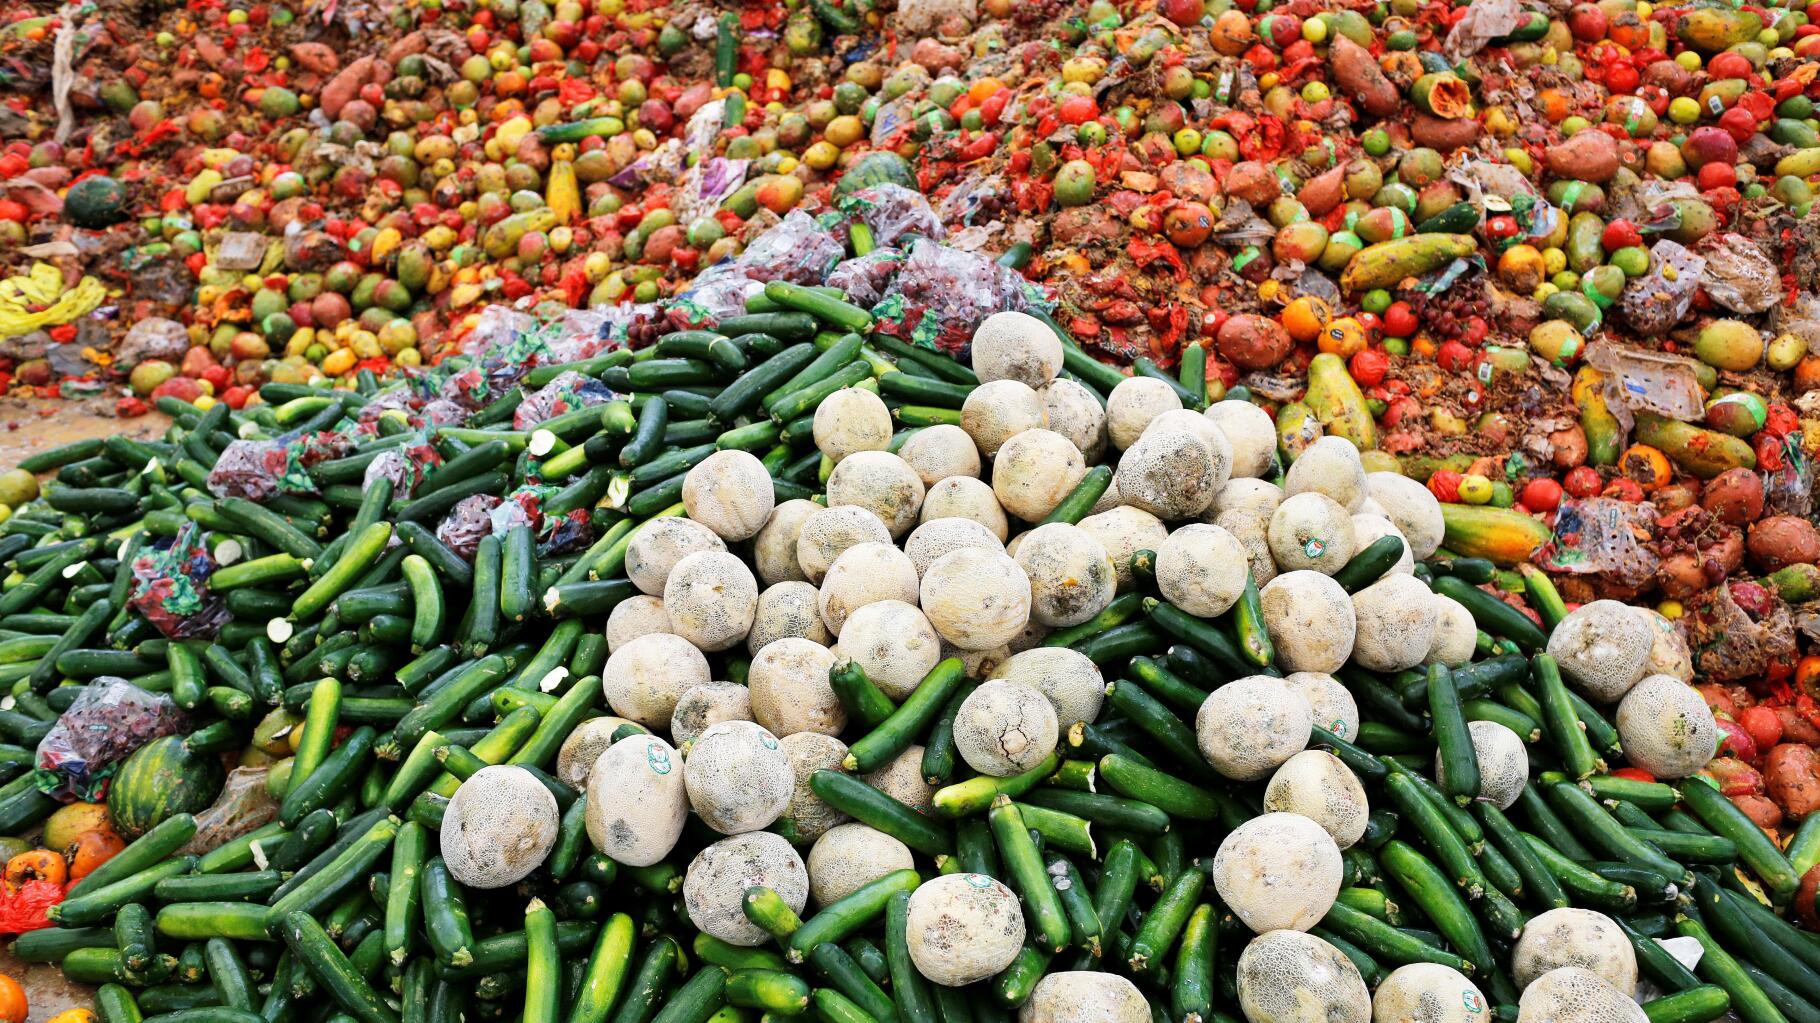 51 millions de tonnes de légumes frais produits en Europe